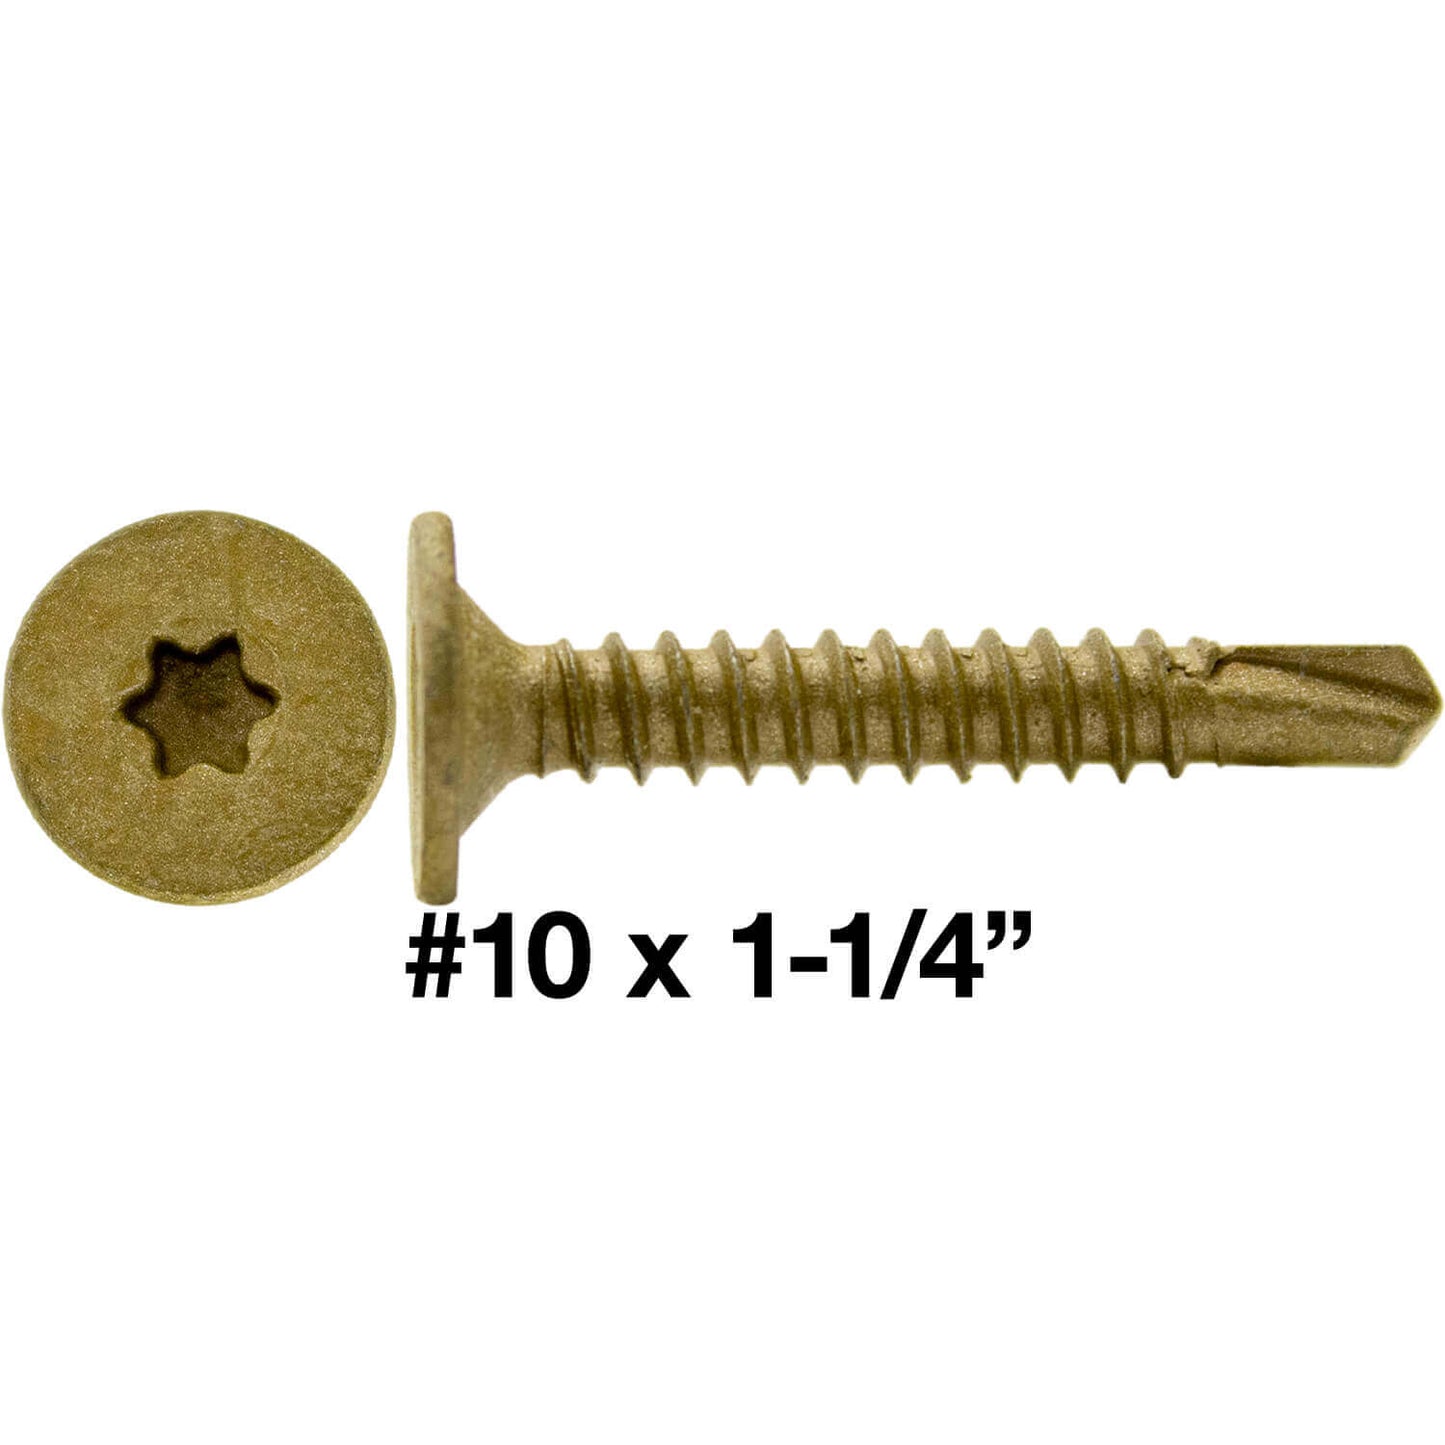 #10 Self Drilling Wafer Head Screws -  Wood to Metal - Self Tapping Star/Torx TEK Screw